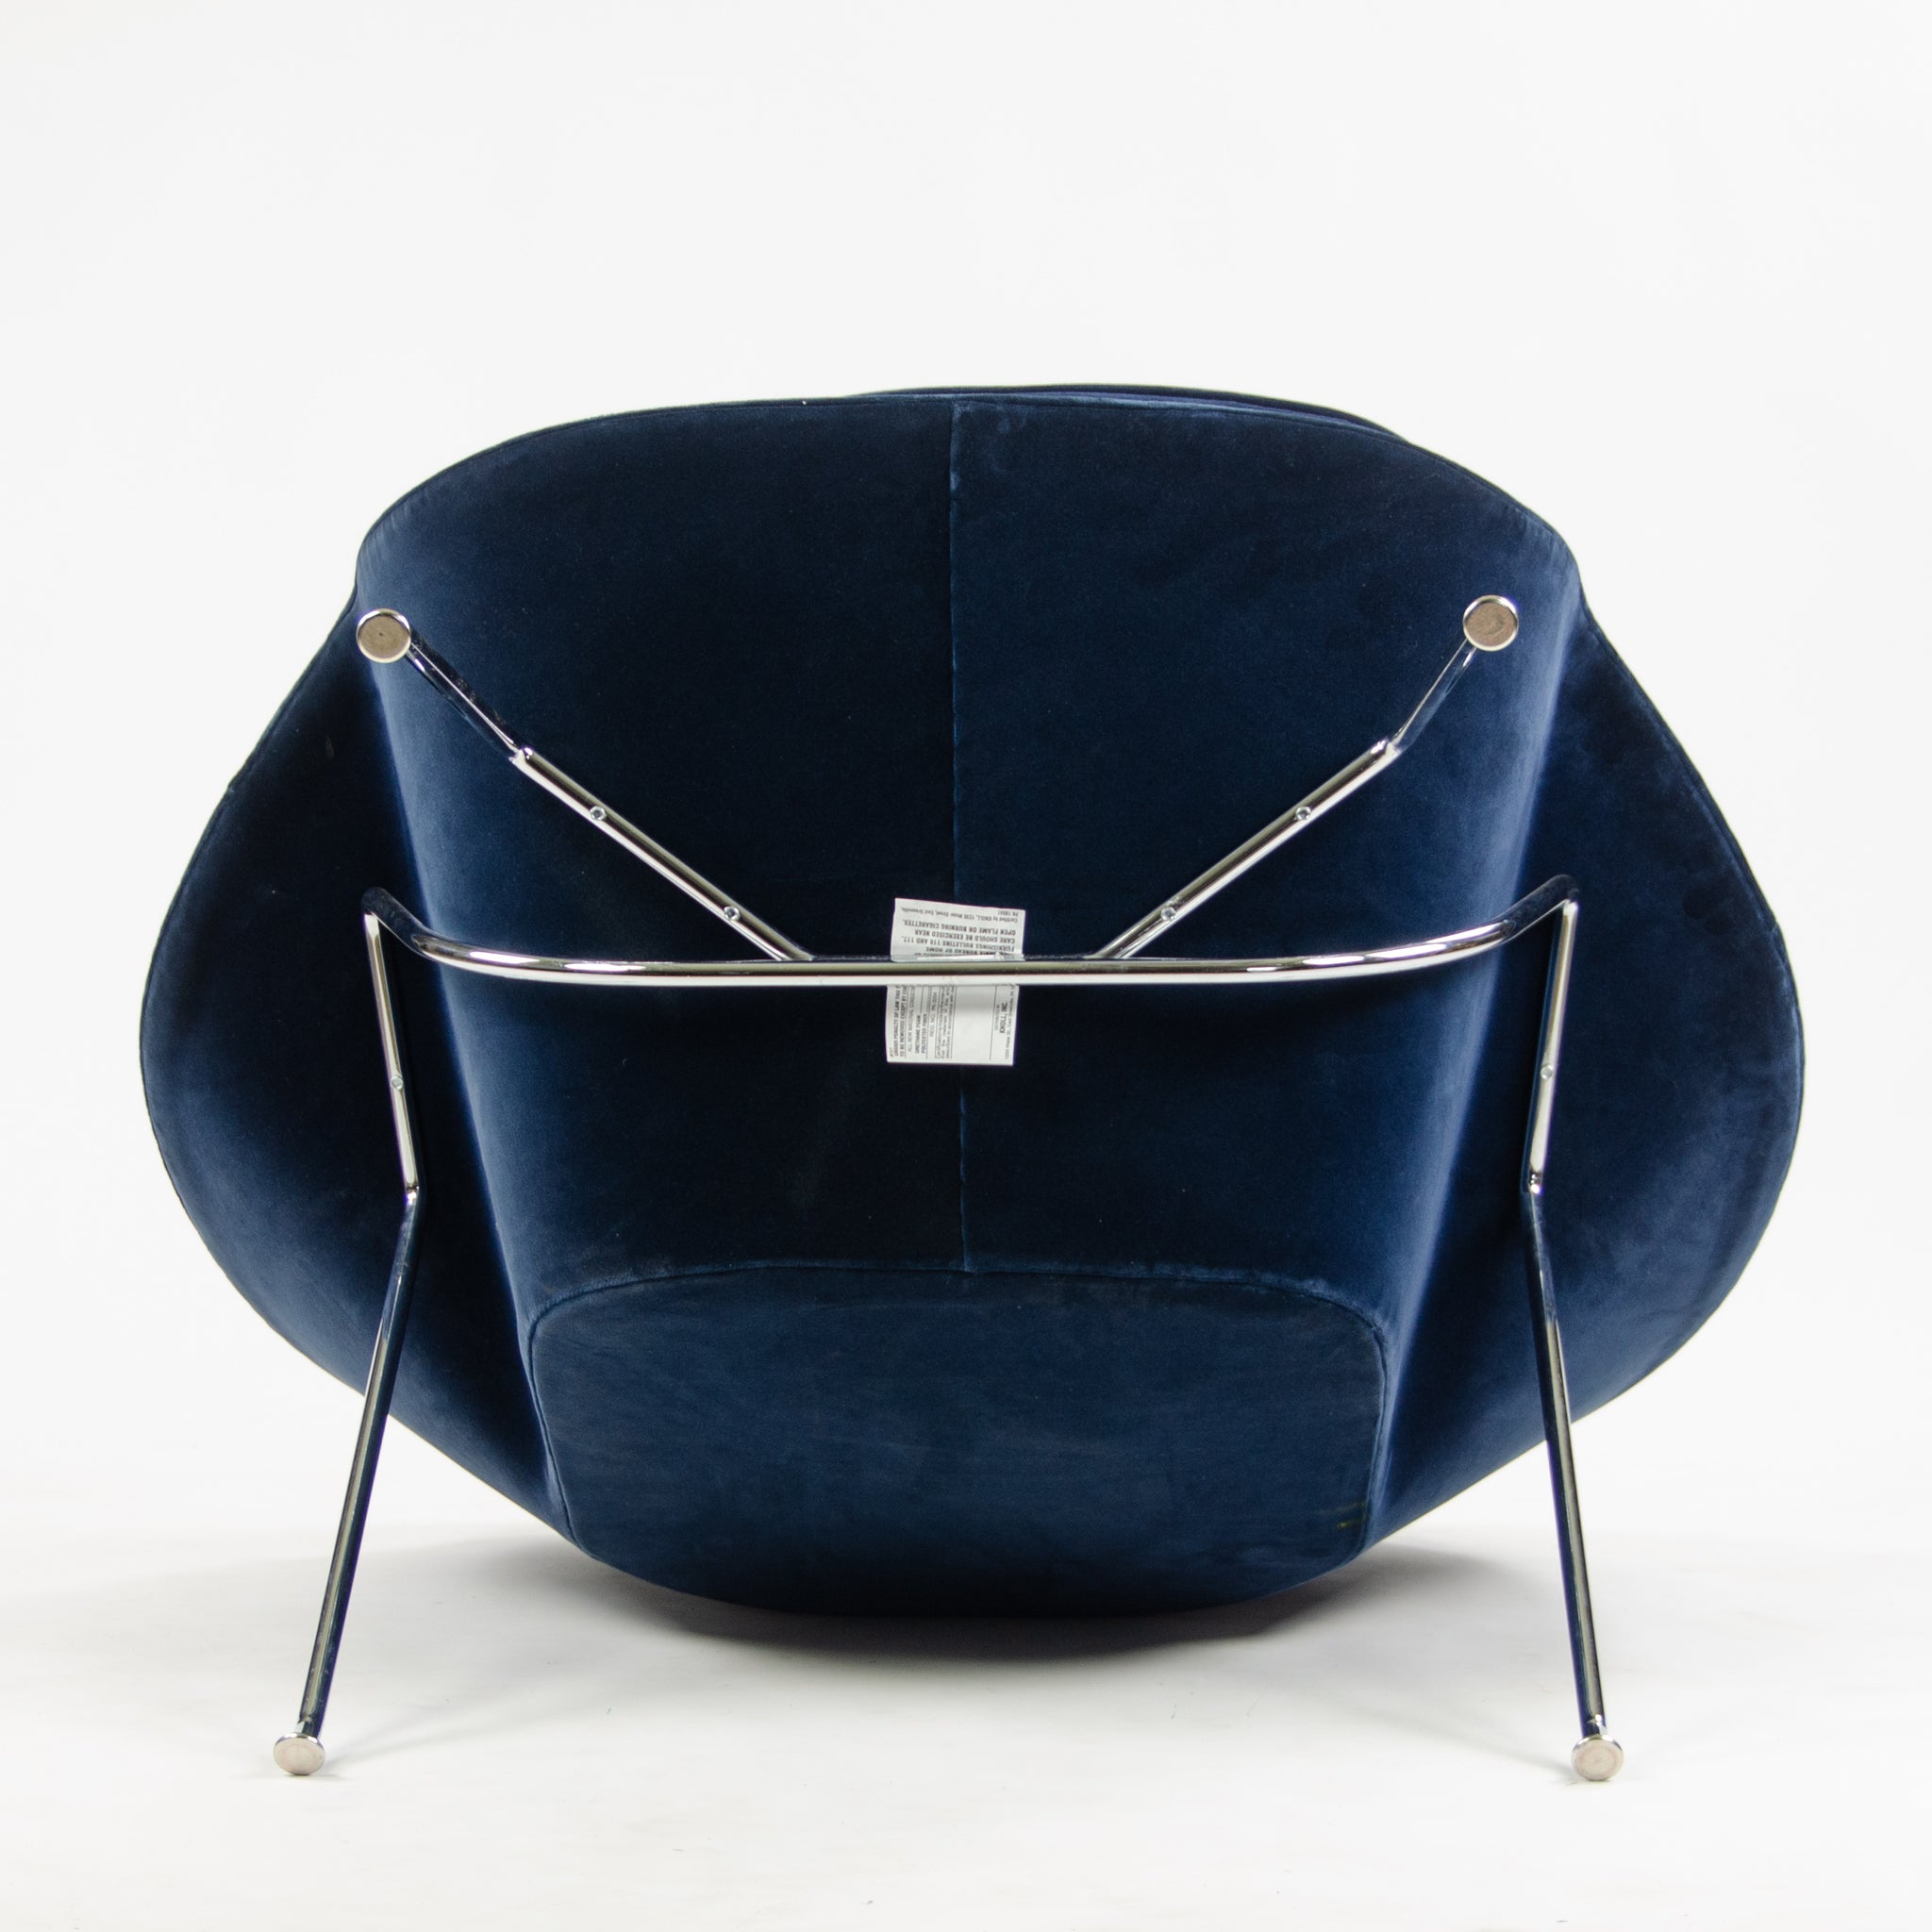 SOLD 2018 Eero Saarinen Womb Chair Knoll Studio Full-Size Dark Blue Mohair Velvet